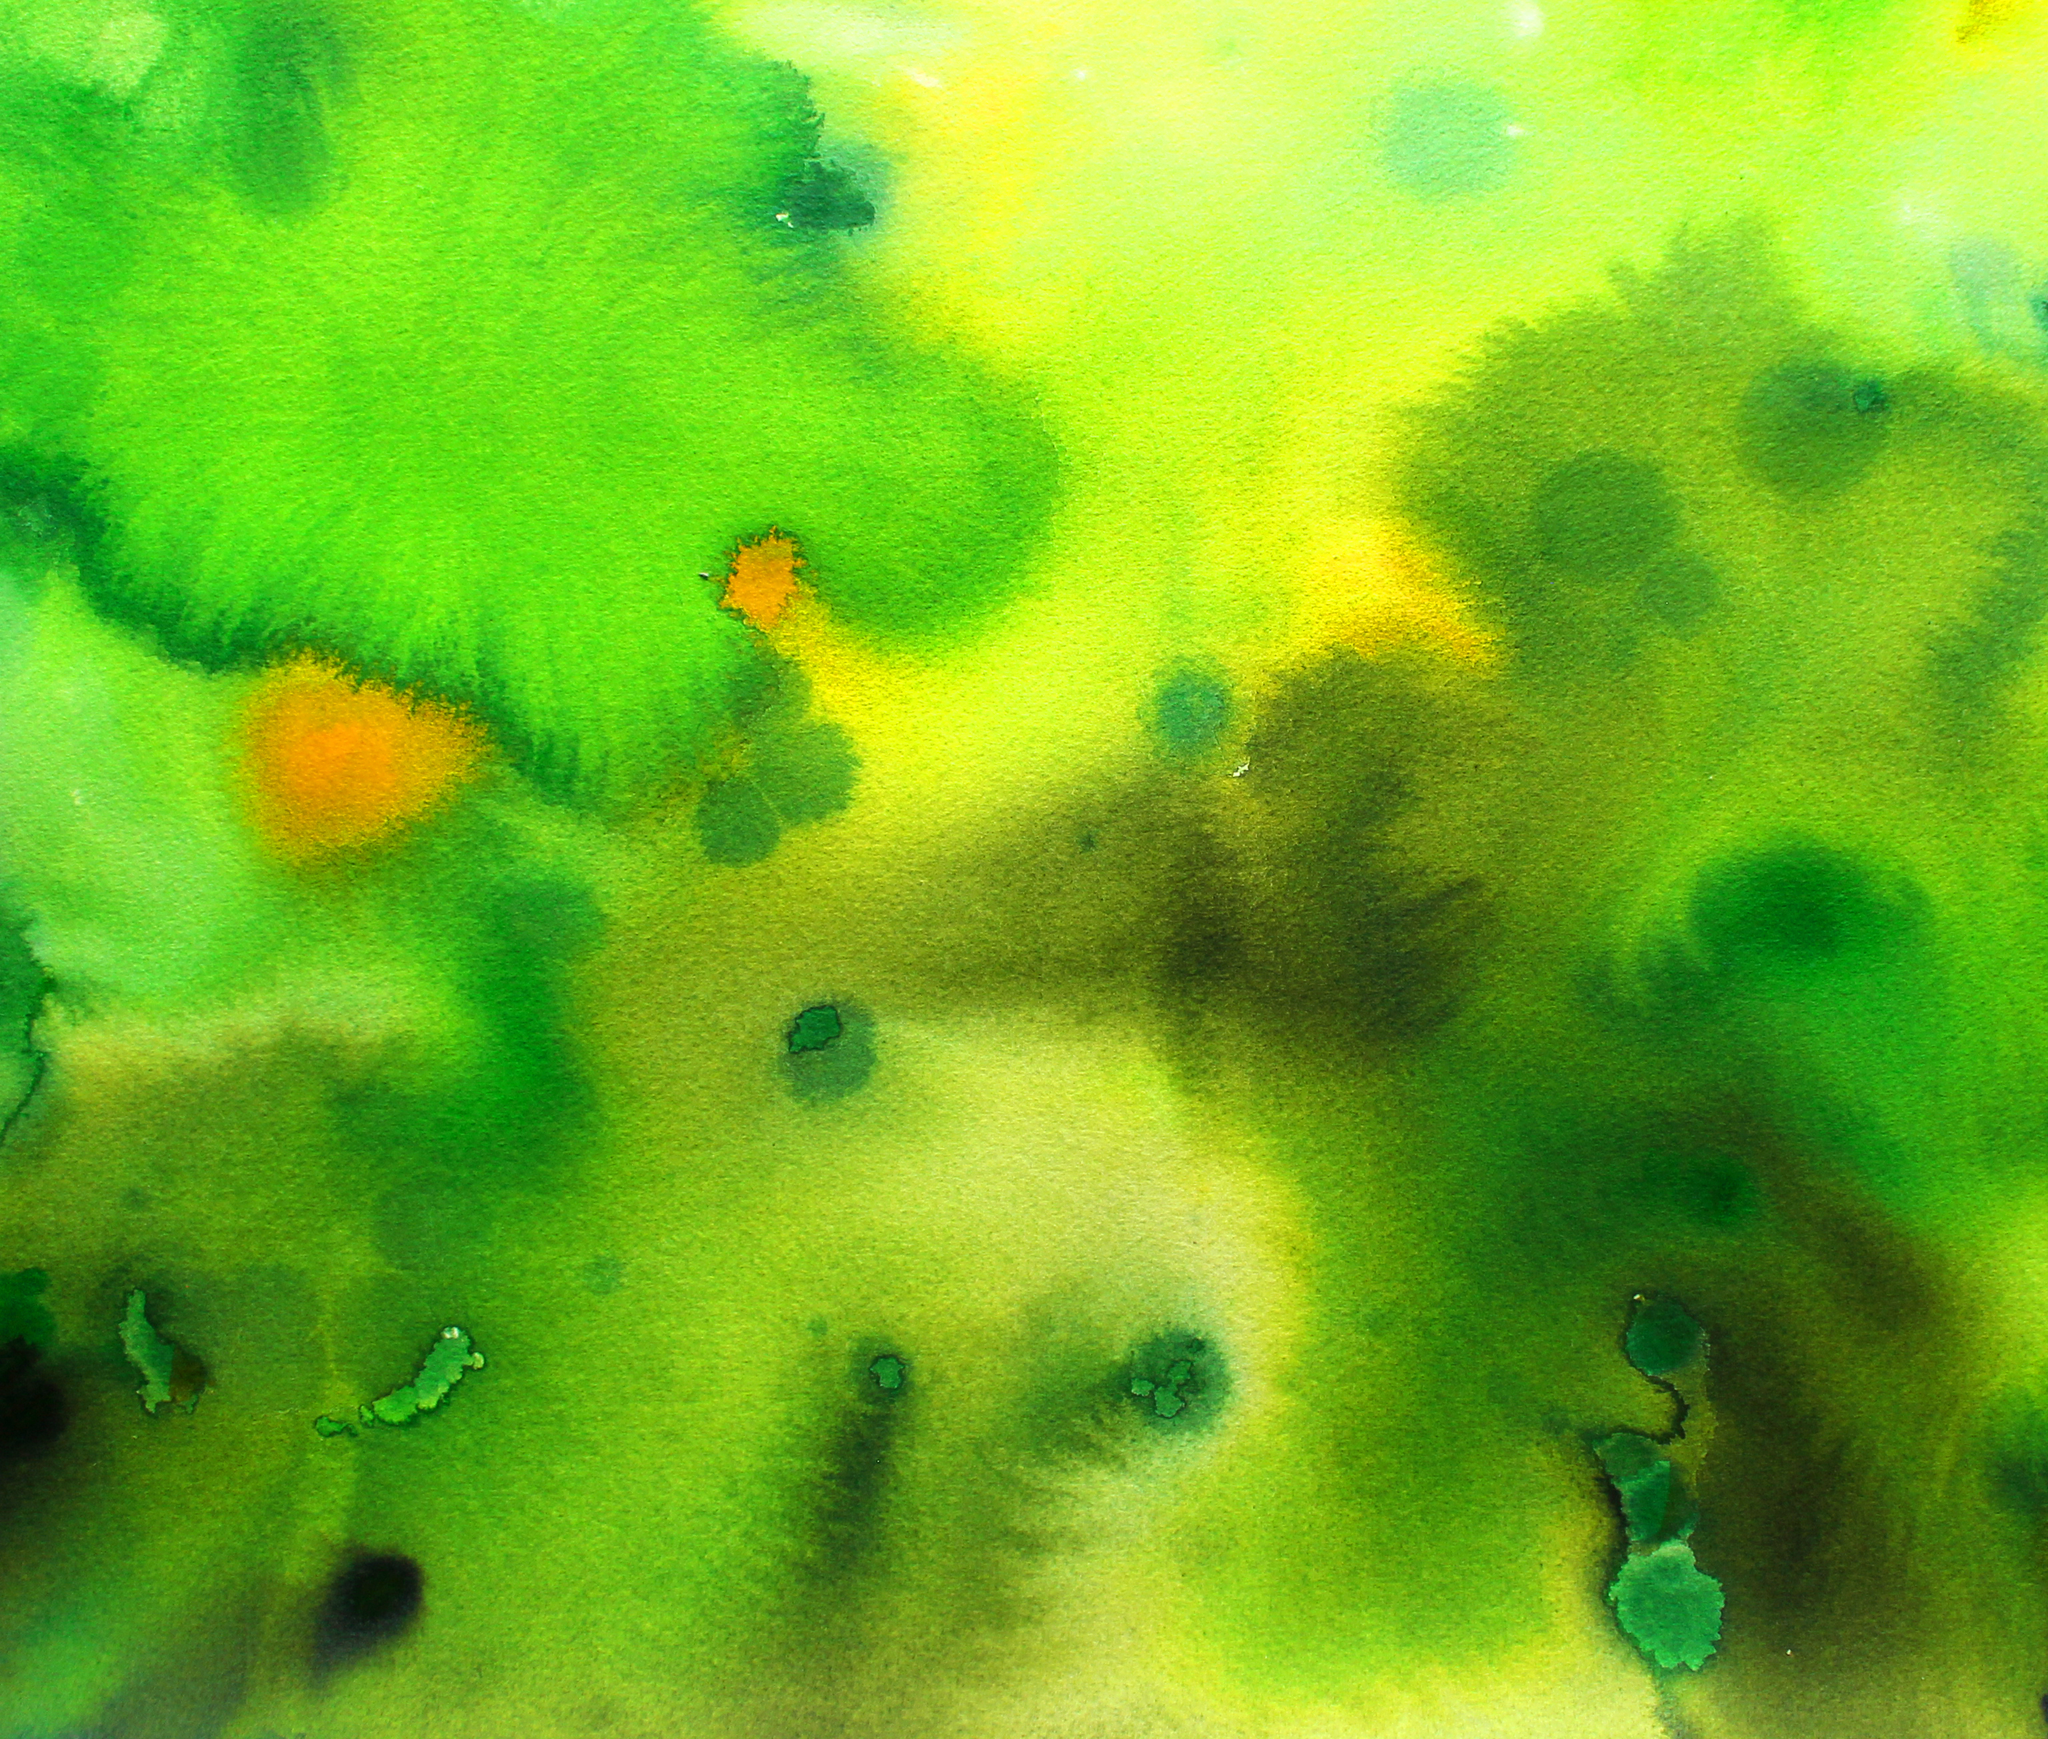 © Jasmin Schön; gruen-gelber Hintergrund; Acryltinte